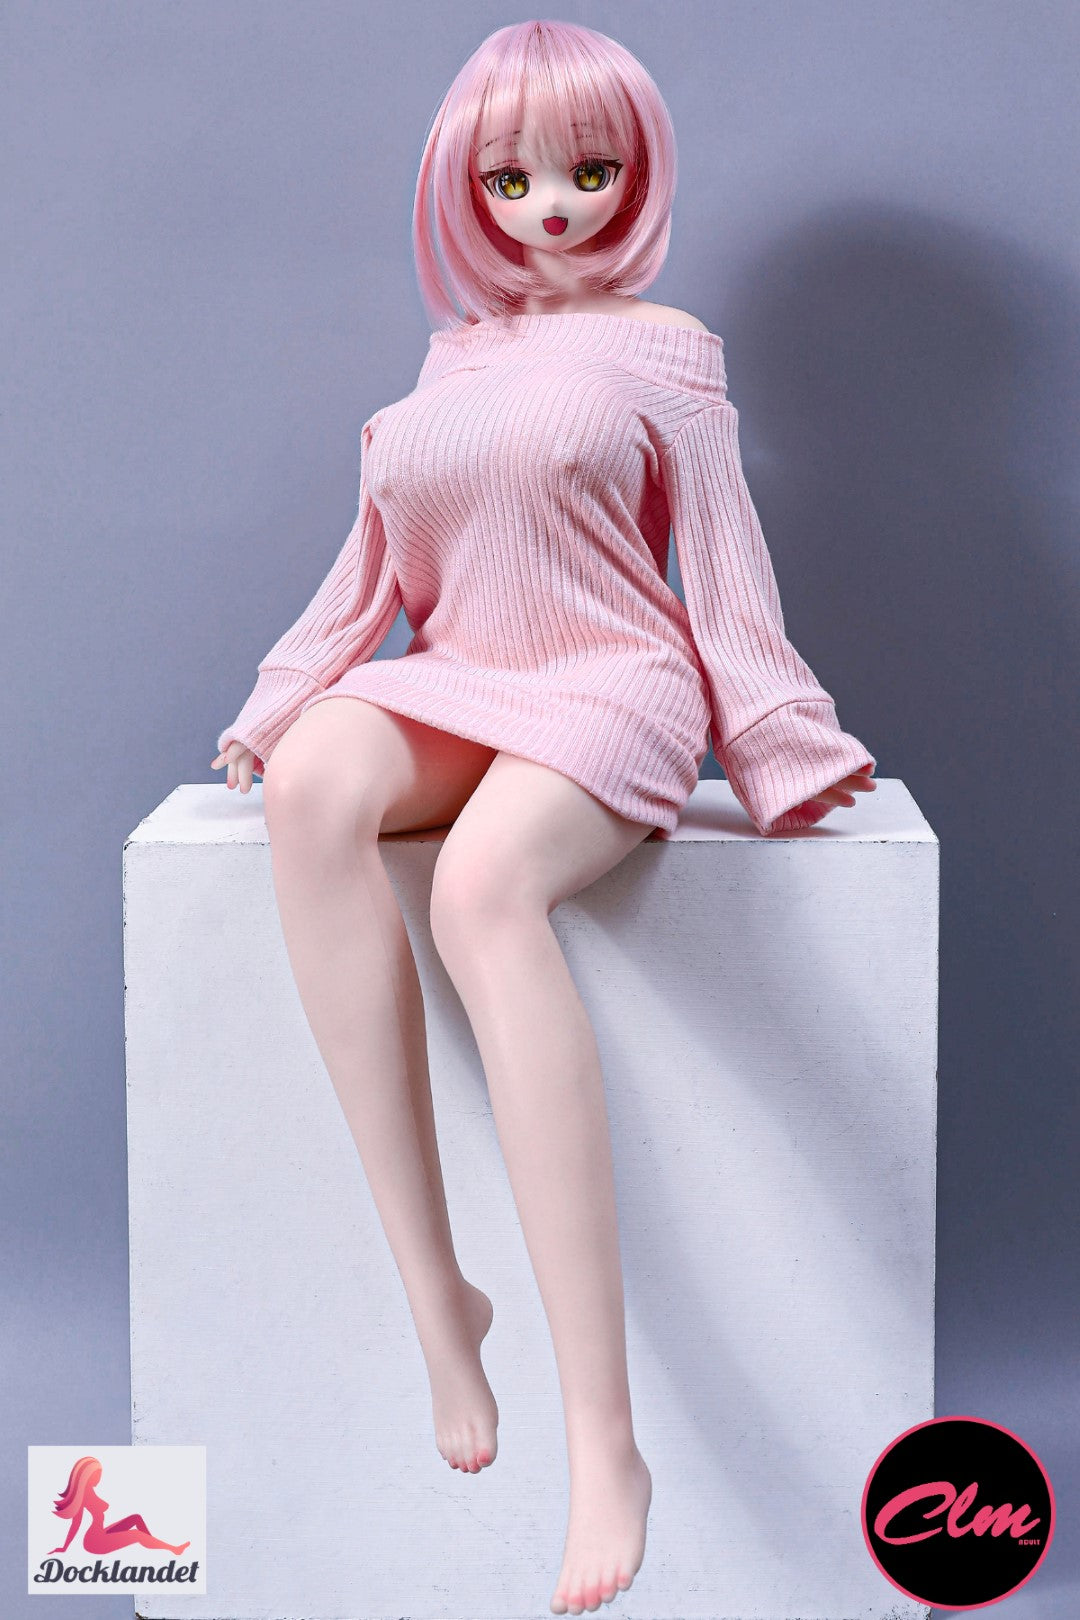 Azami är en silikon-docka på 60 cm med en härlig stil från Climax Doll. Denna sexdocka har ett unikt utseende och en kurvig kropp med stora bröst i storlek G-kupa. Climax Doll har dockor både av TPE och silikon i många olika storlekar.